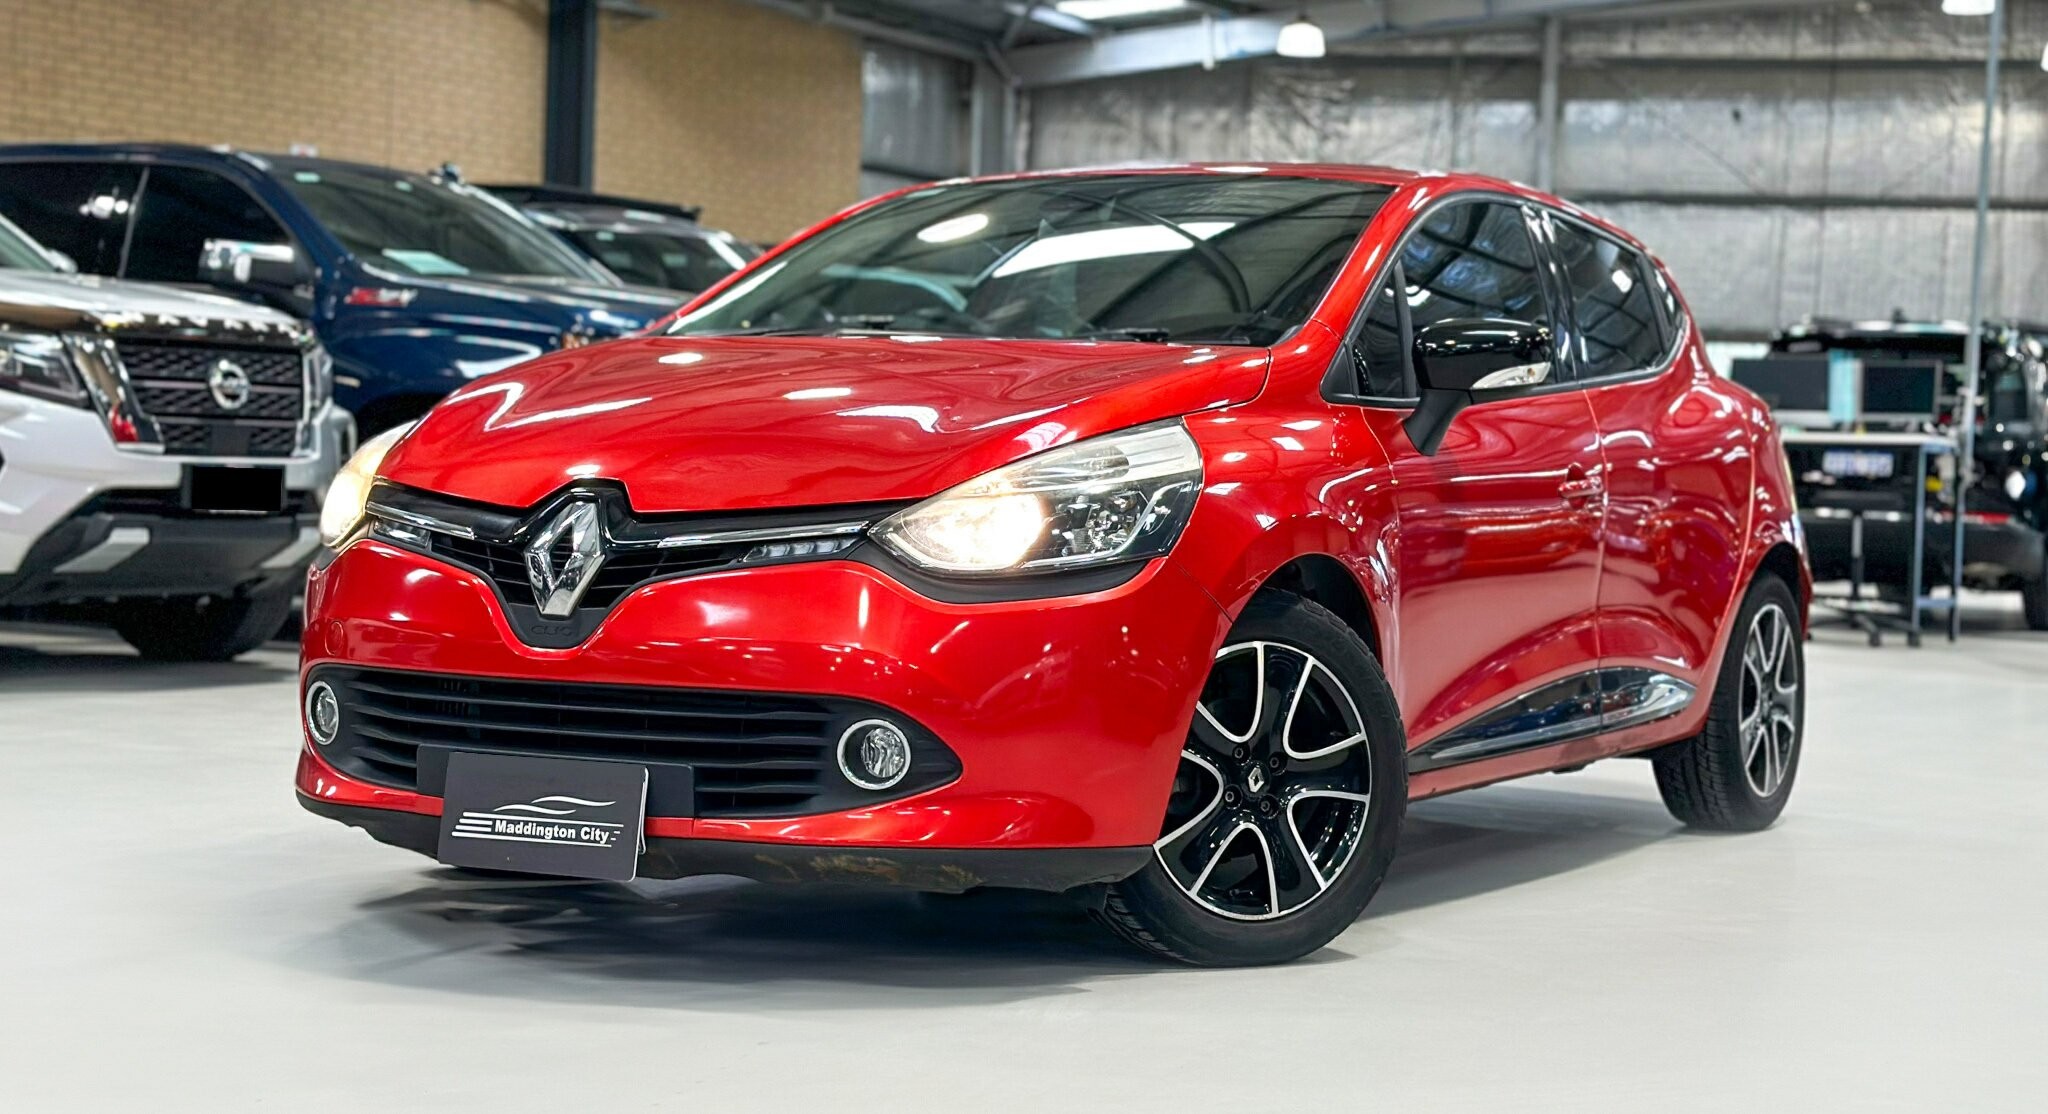 Renault Clio image 3